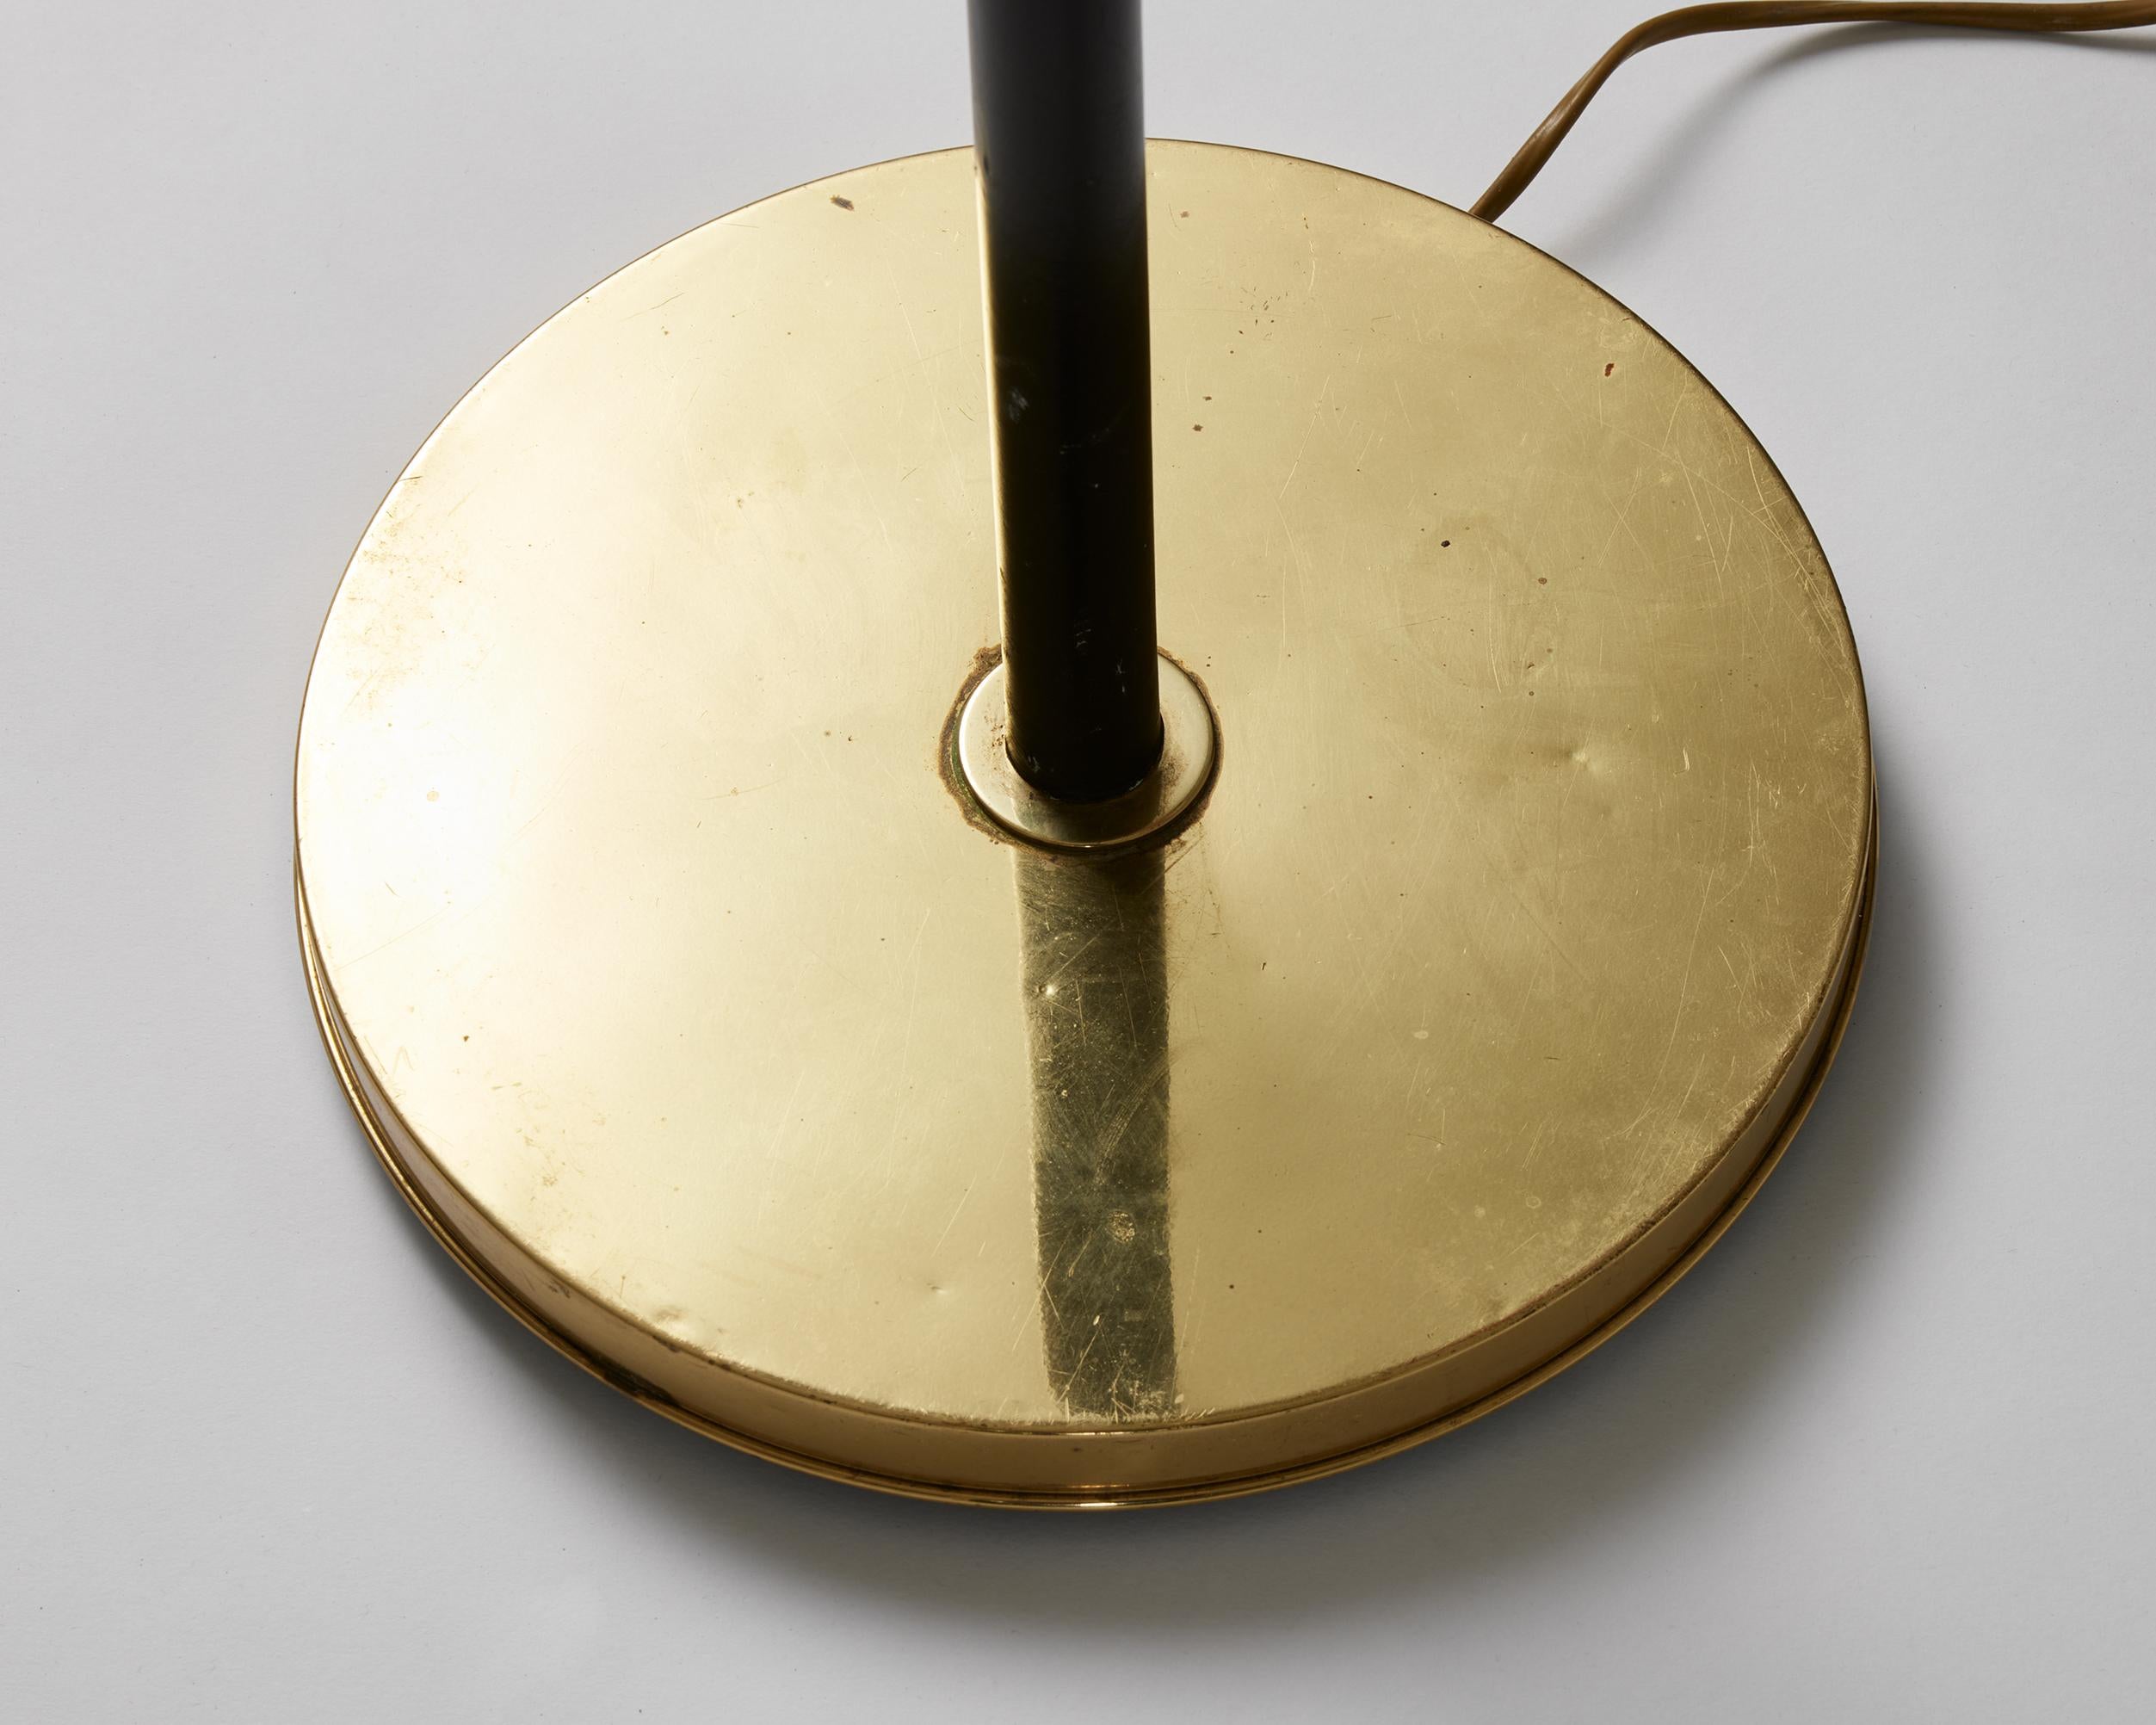 20th Century Floor Lamp ‘San Francisco’ Model G2431 Designed by Josef Frank for Svenskt Tenn